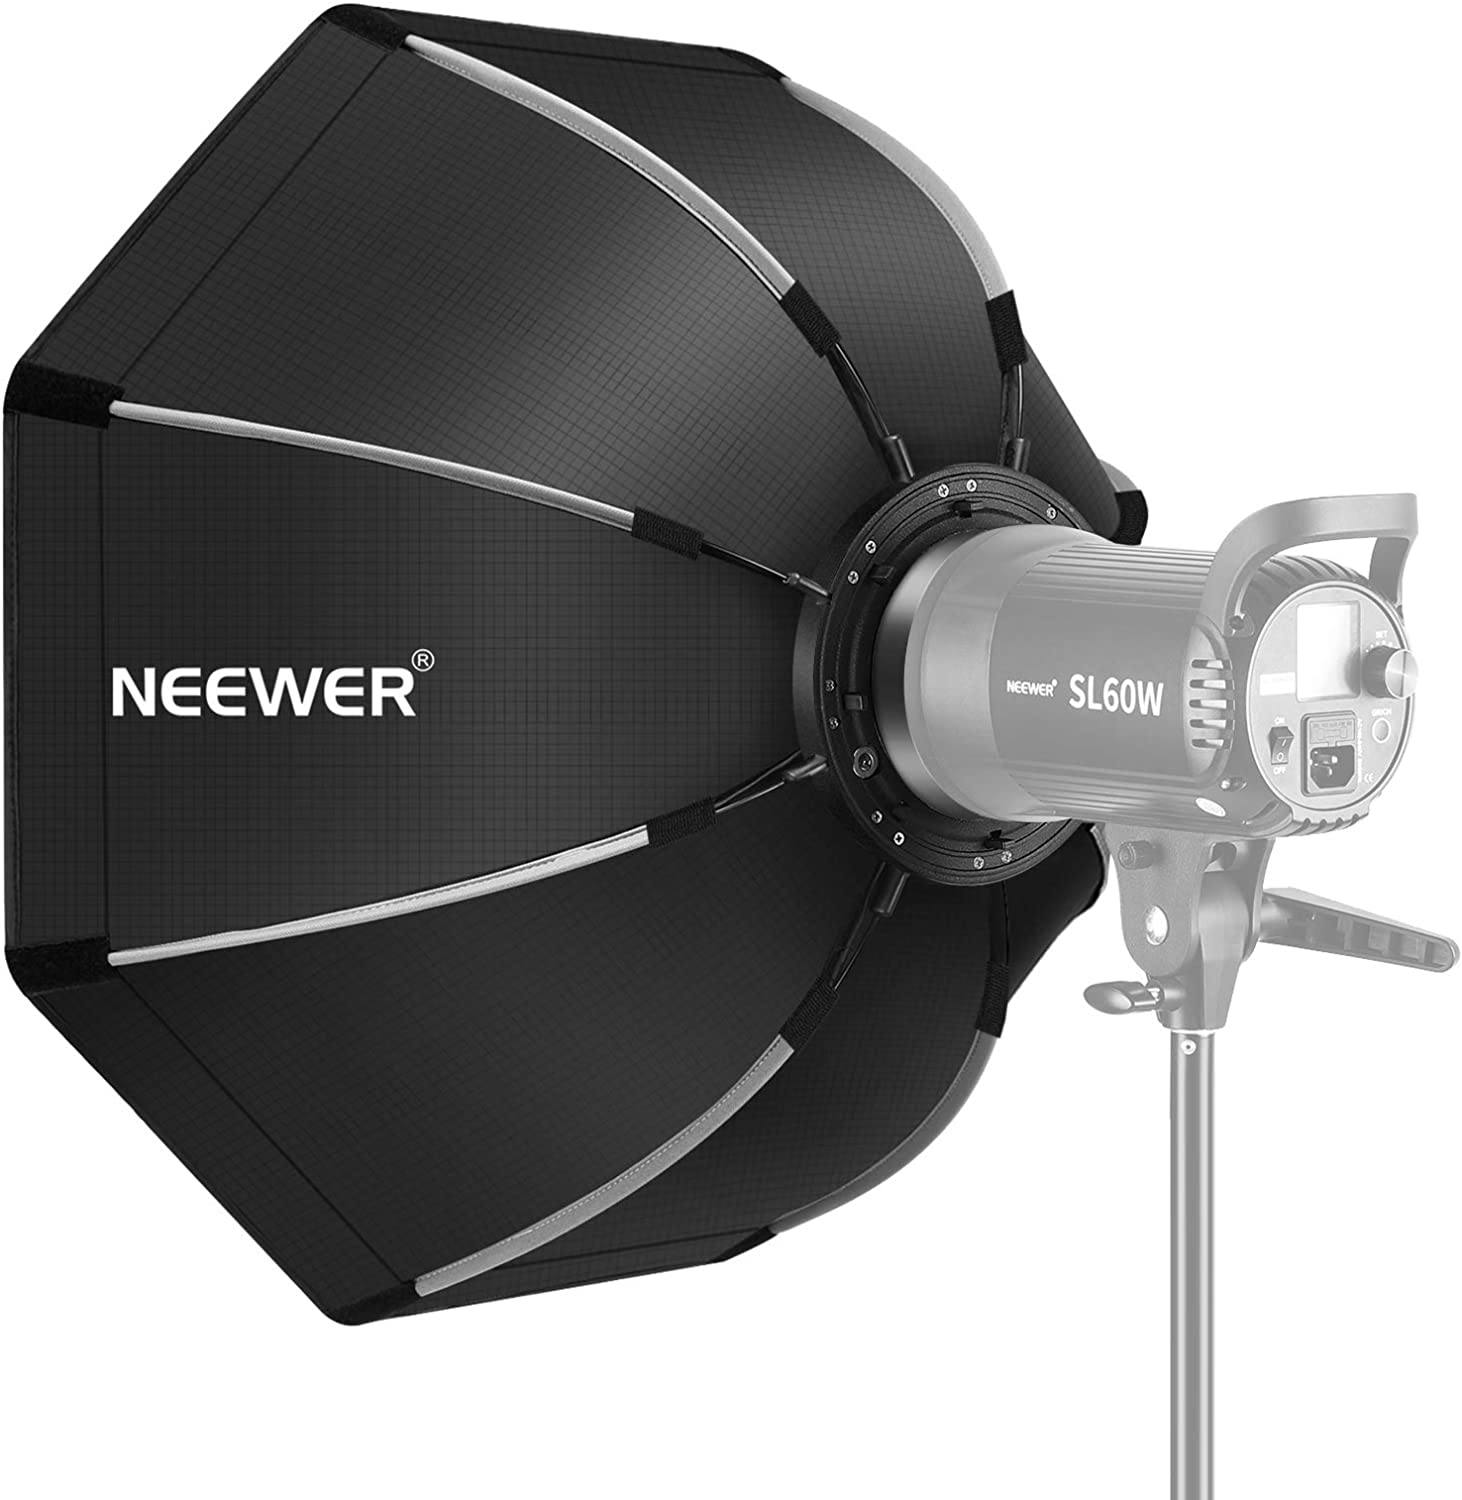 Neewer CB60 60W 5600K LEDビデオライト(スタンド付)[ソフトボックス付 